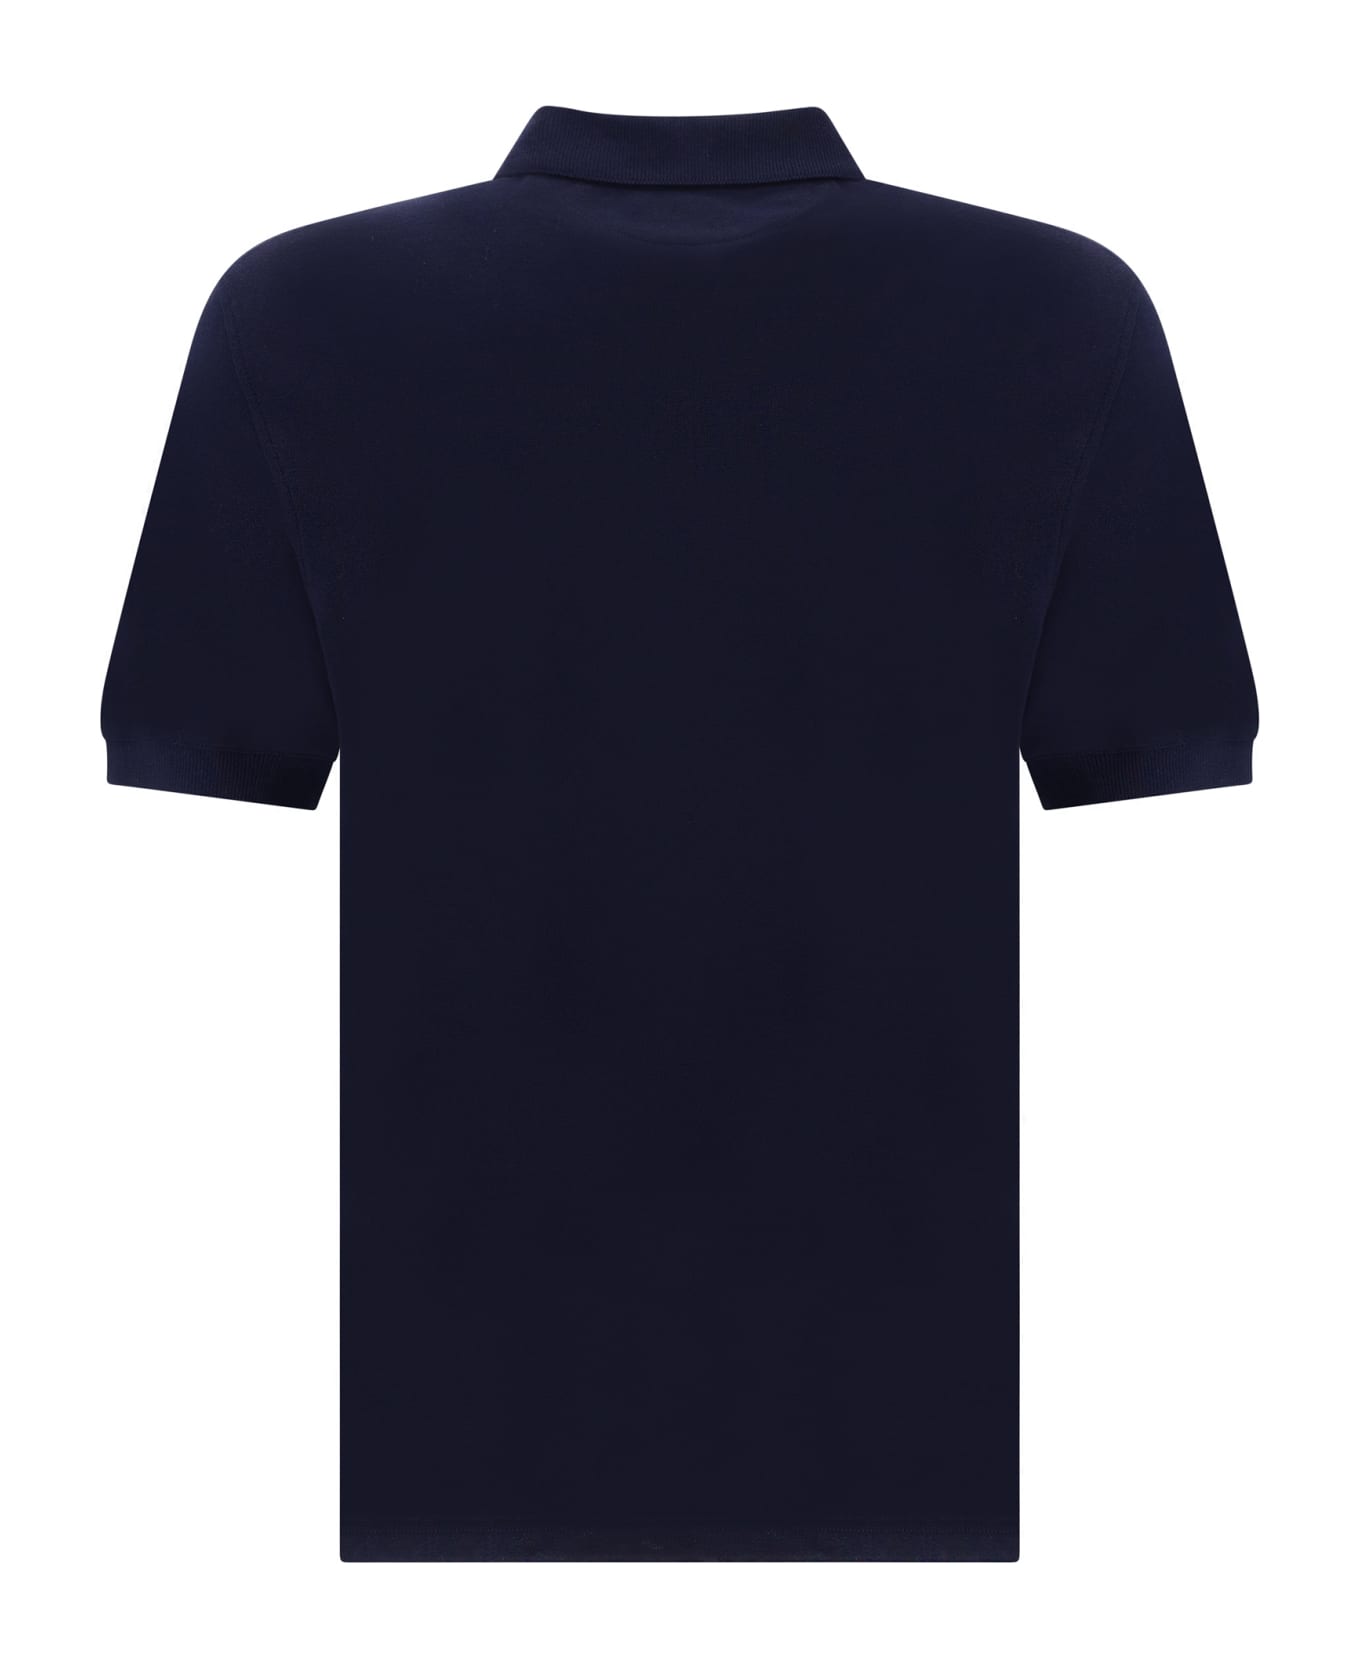 Brunello Cucinelli Polo Shirt - Cobalto ポロシャツ